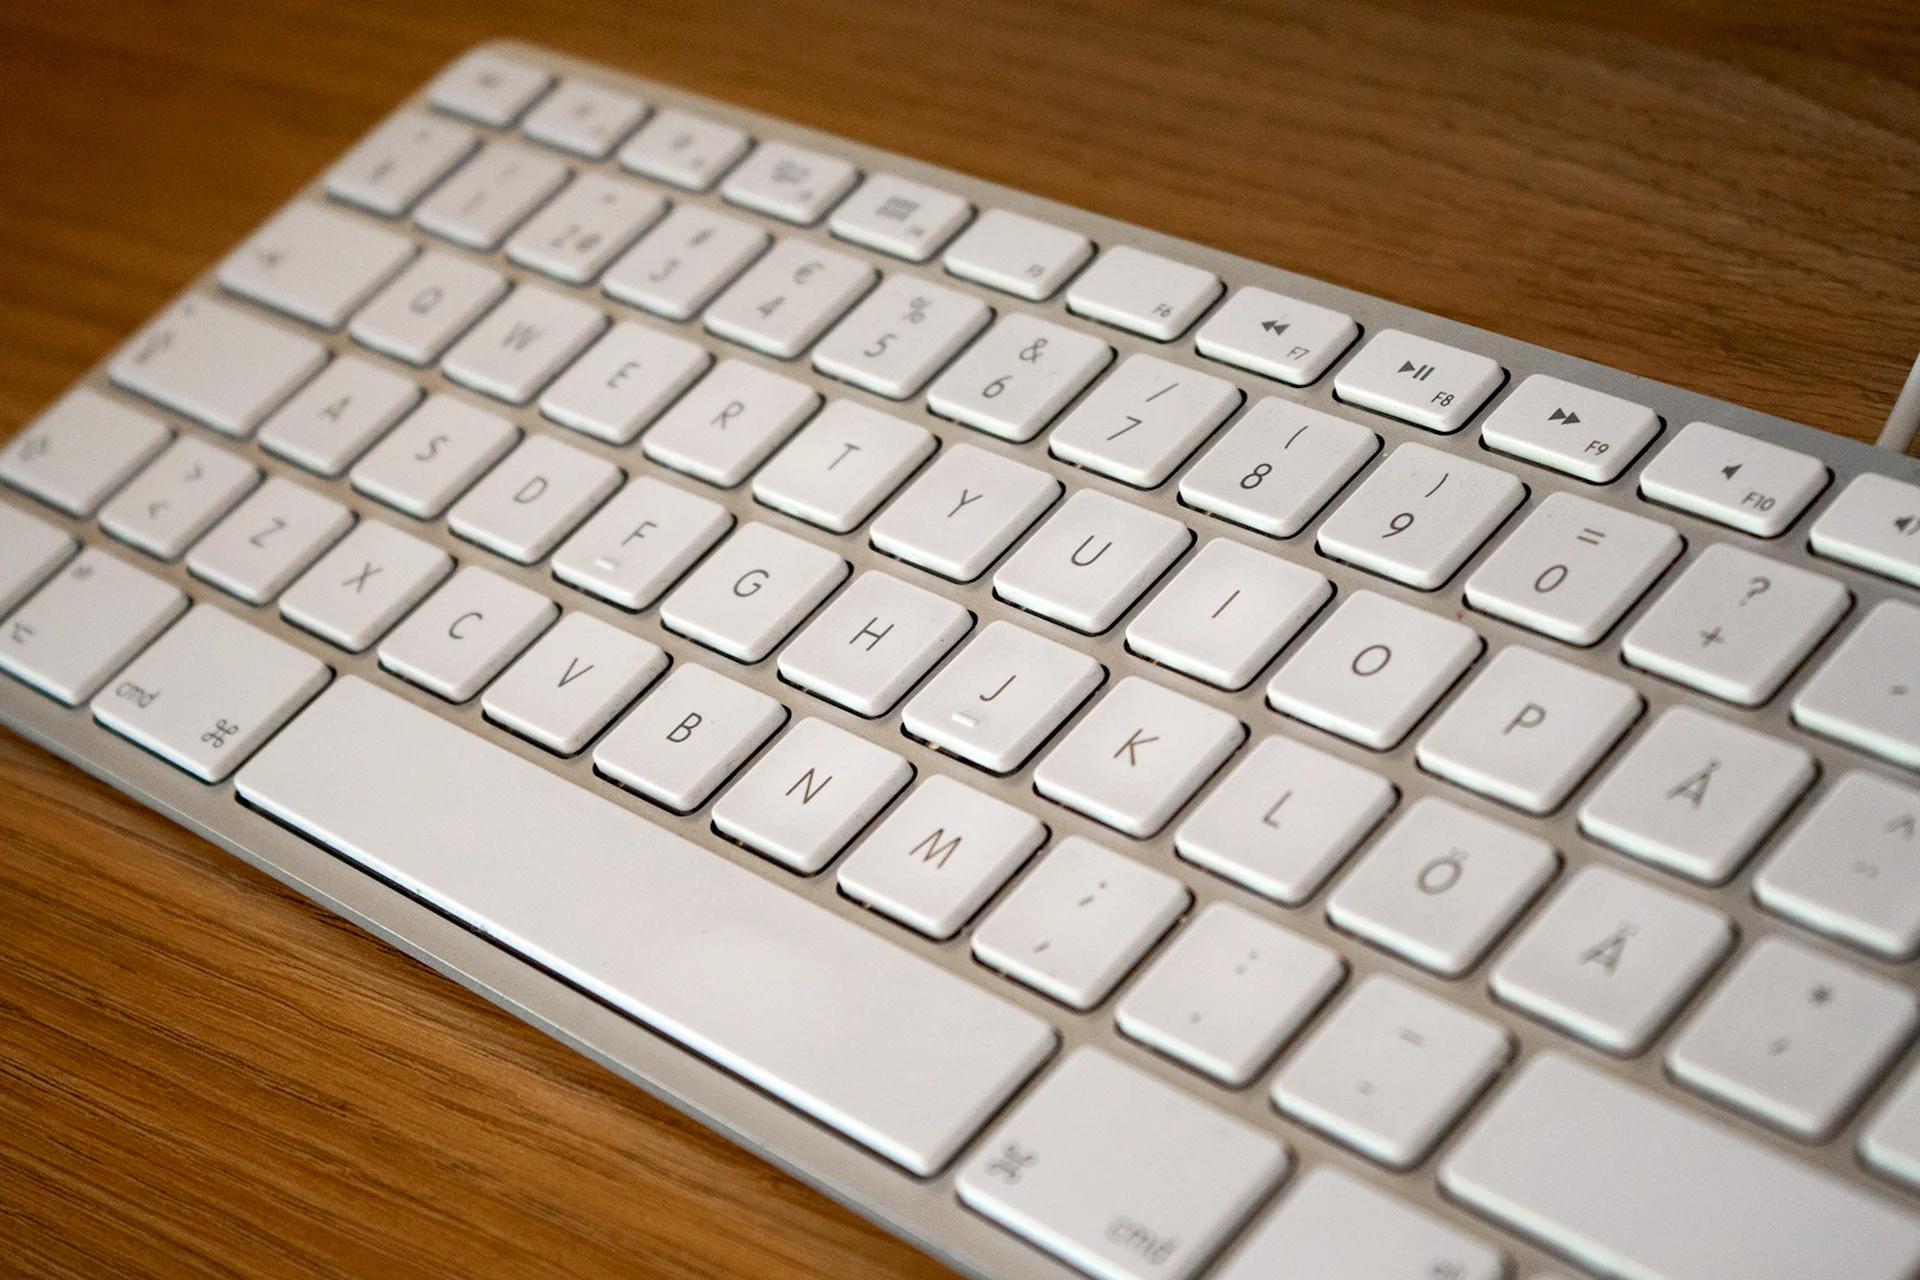 Apple Keyboard 2000